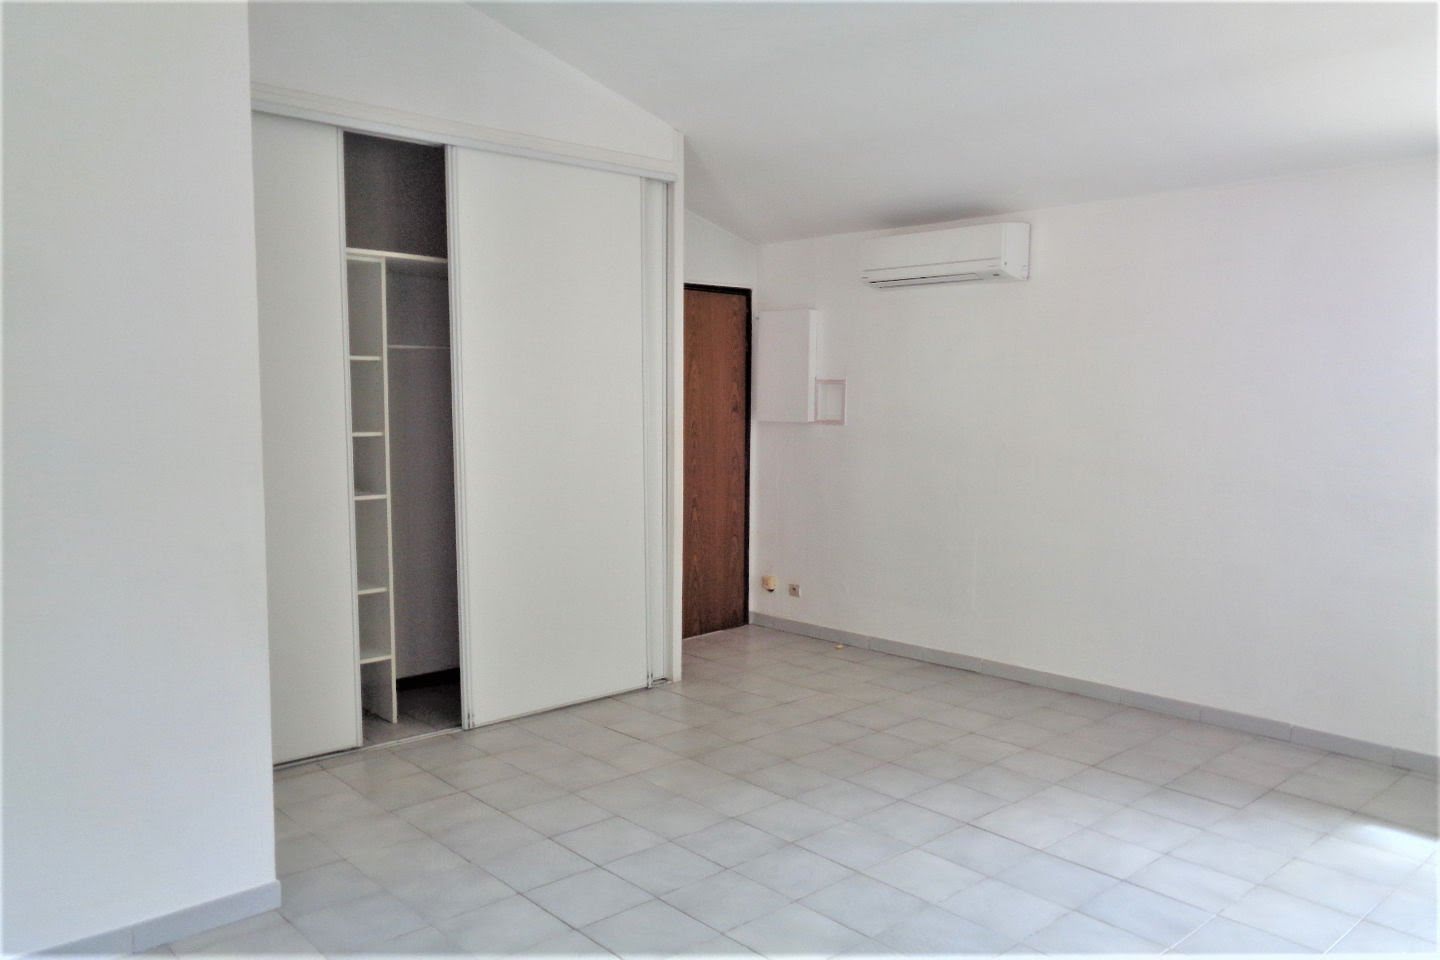 Location appartement 2 pièces 43,57 m2